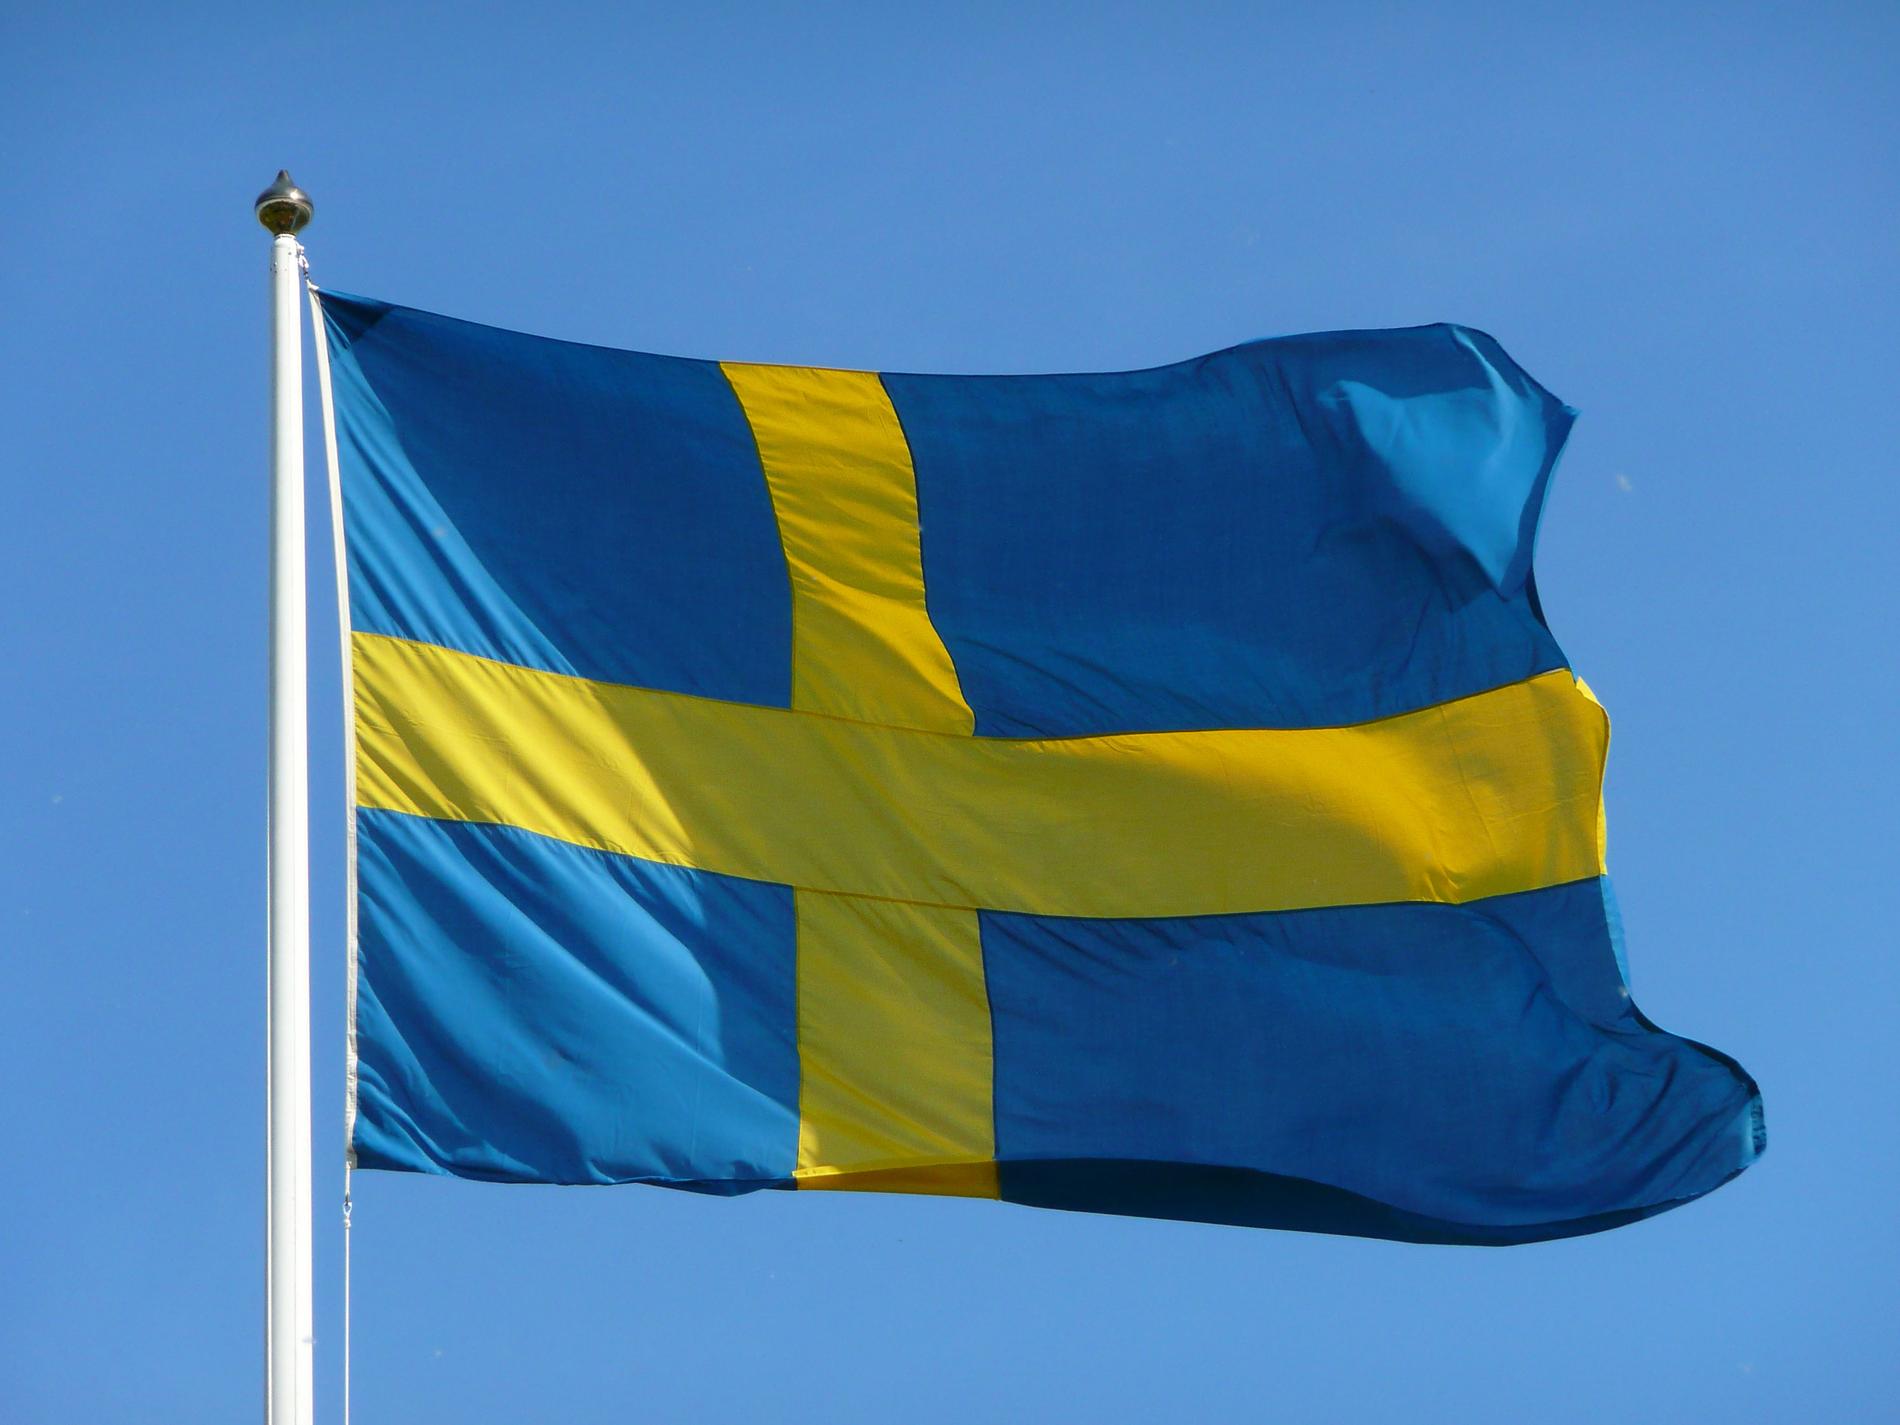 I år har det blivit lag på att varje kommun en gång per år måste anordna en medborgarskapsceremoni för att högtidlighålla nya svenska medborgare och markera medborgarskapets betydelse.